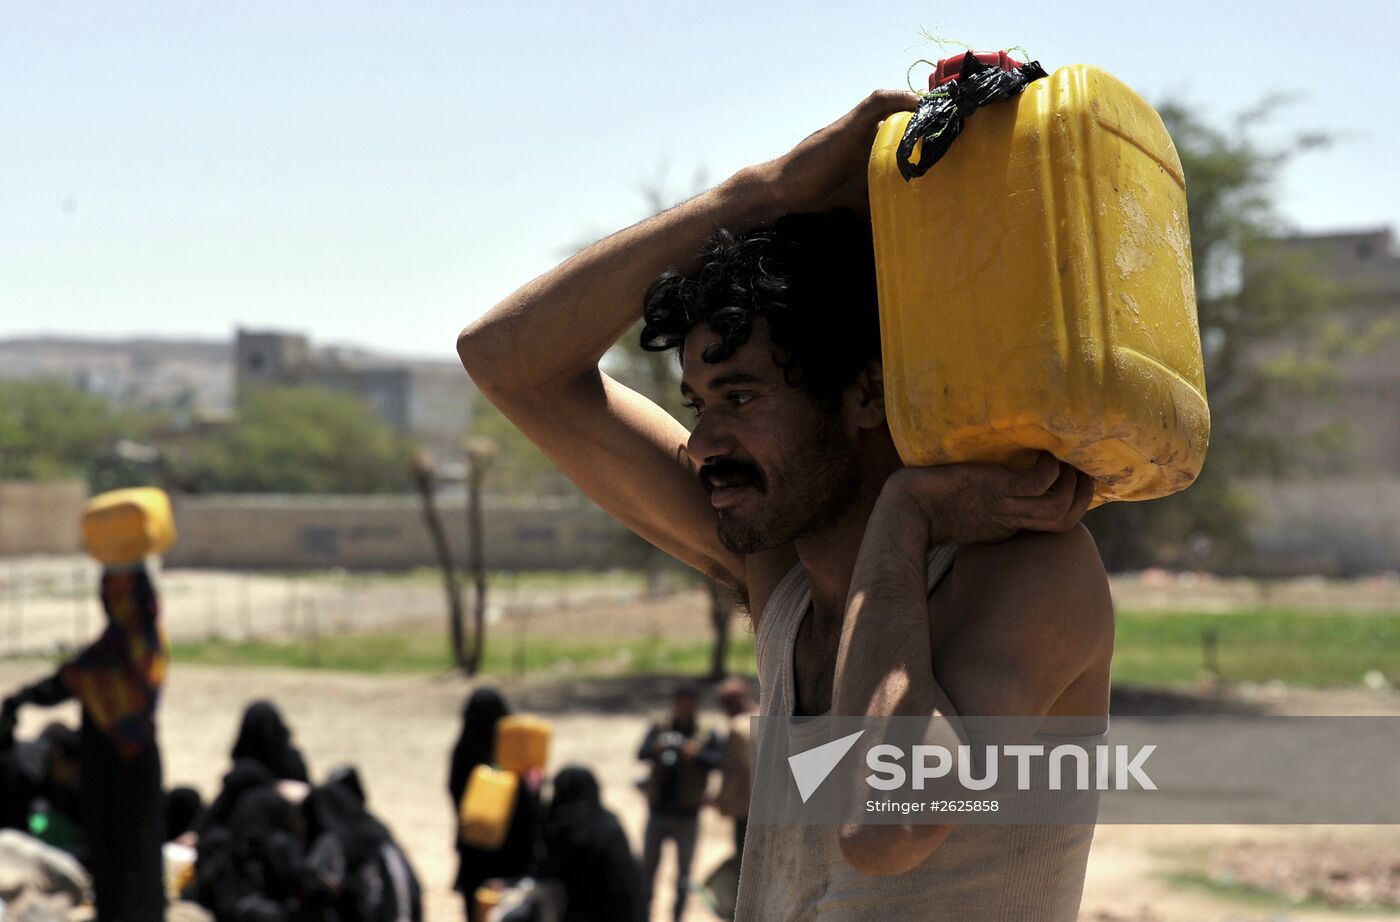 Shortage of drinking water in Sana'a, Yemen